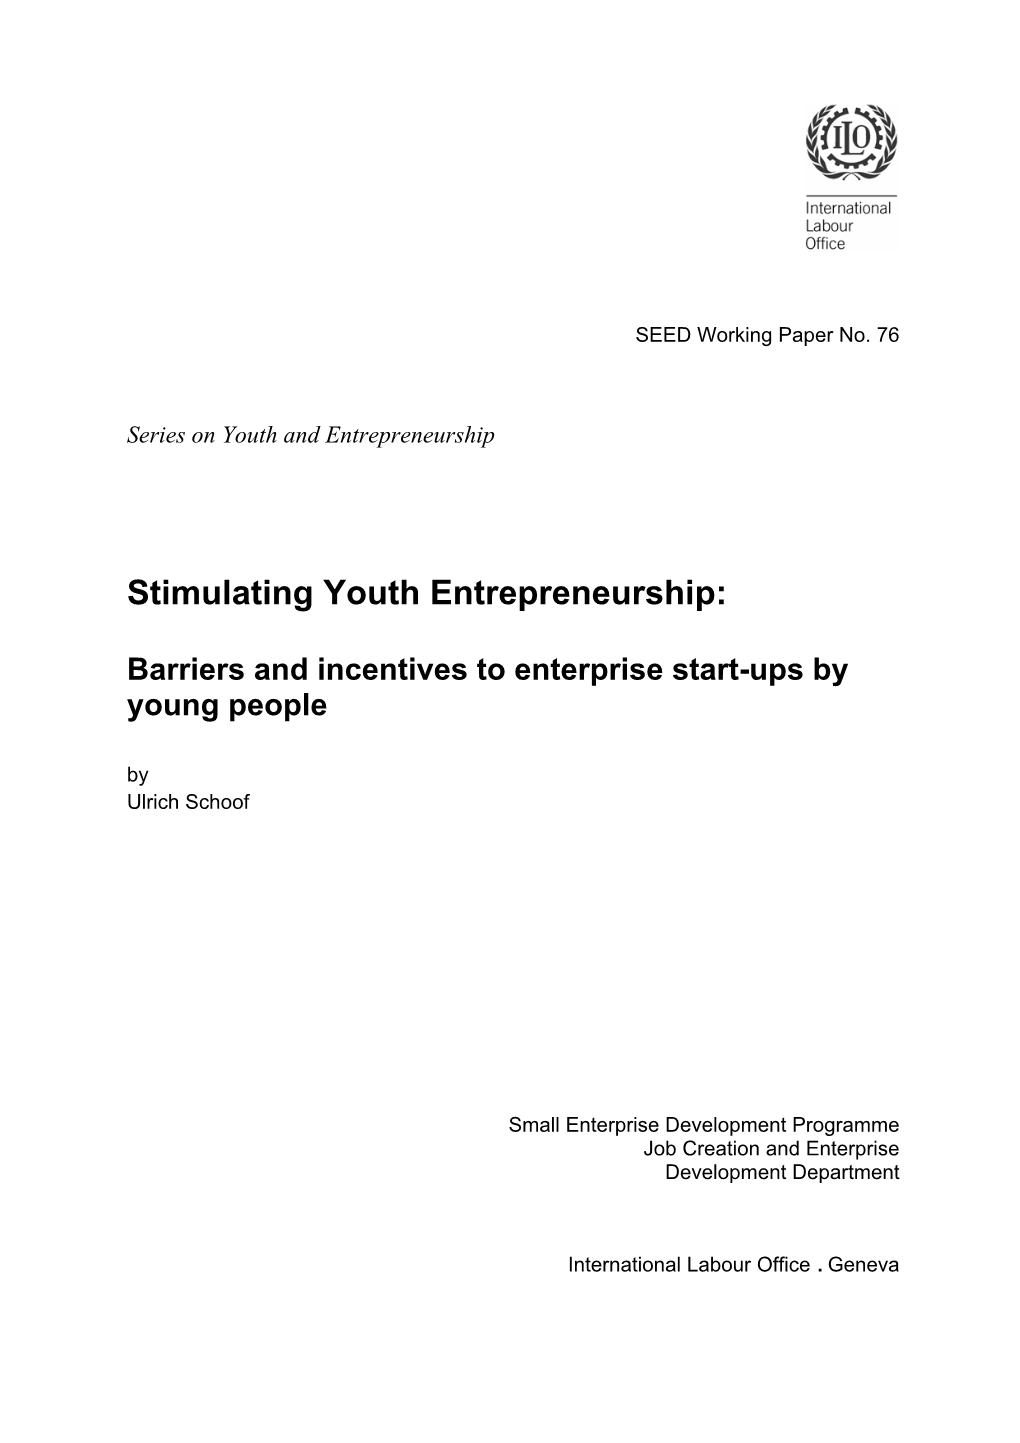 Stimulating Youth Entrepreneurship